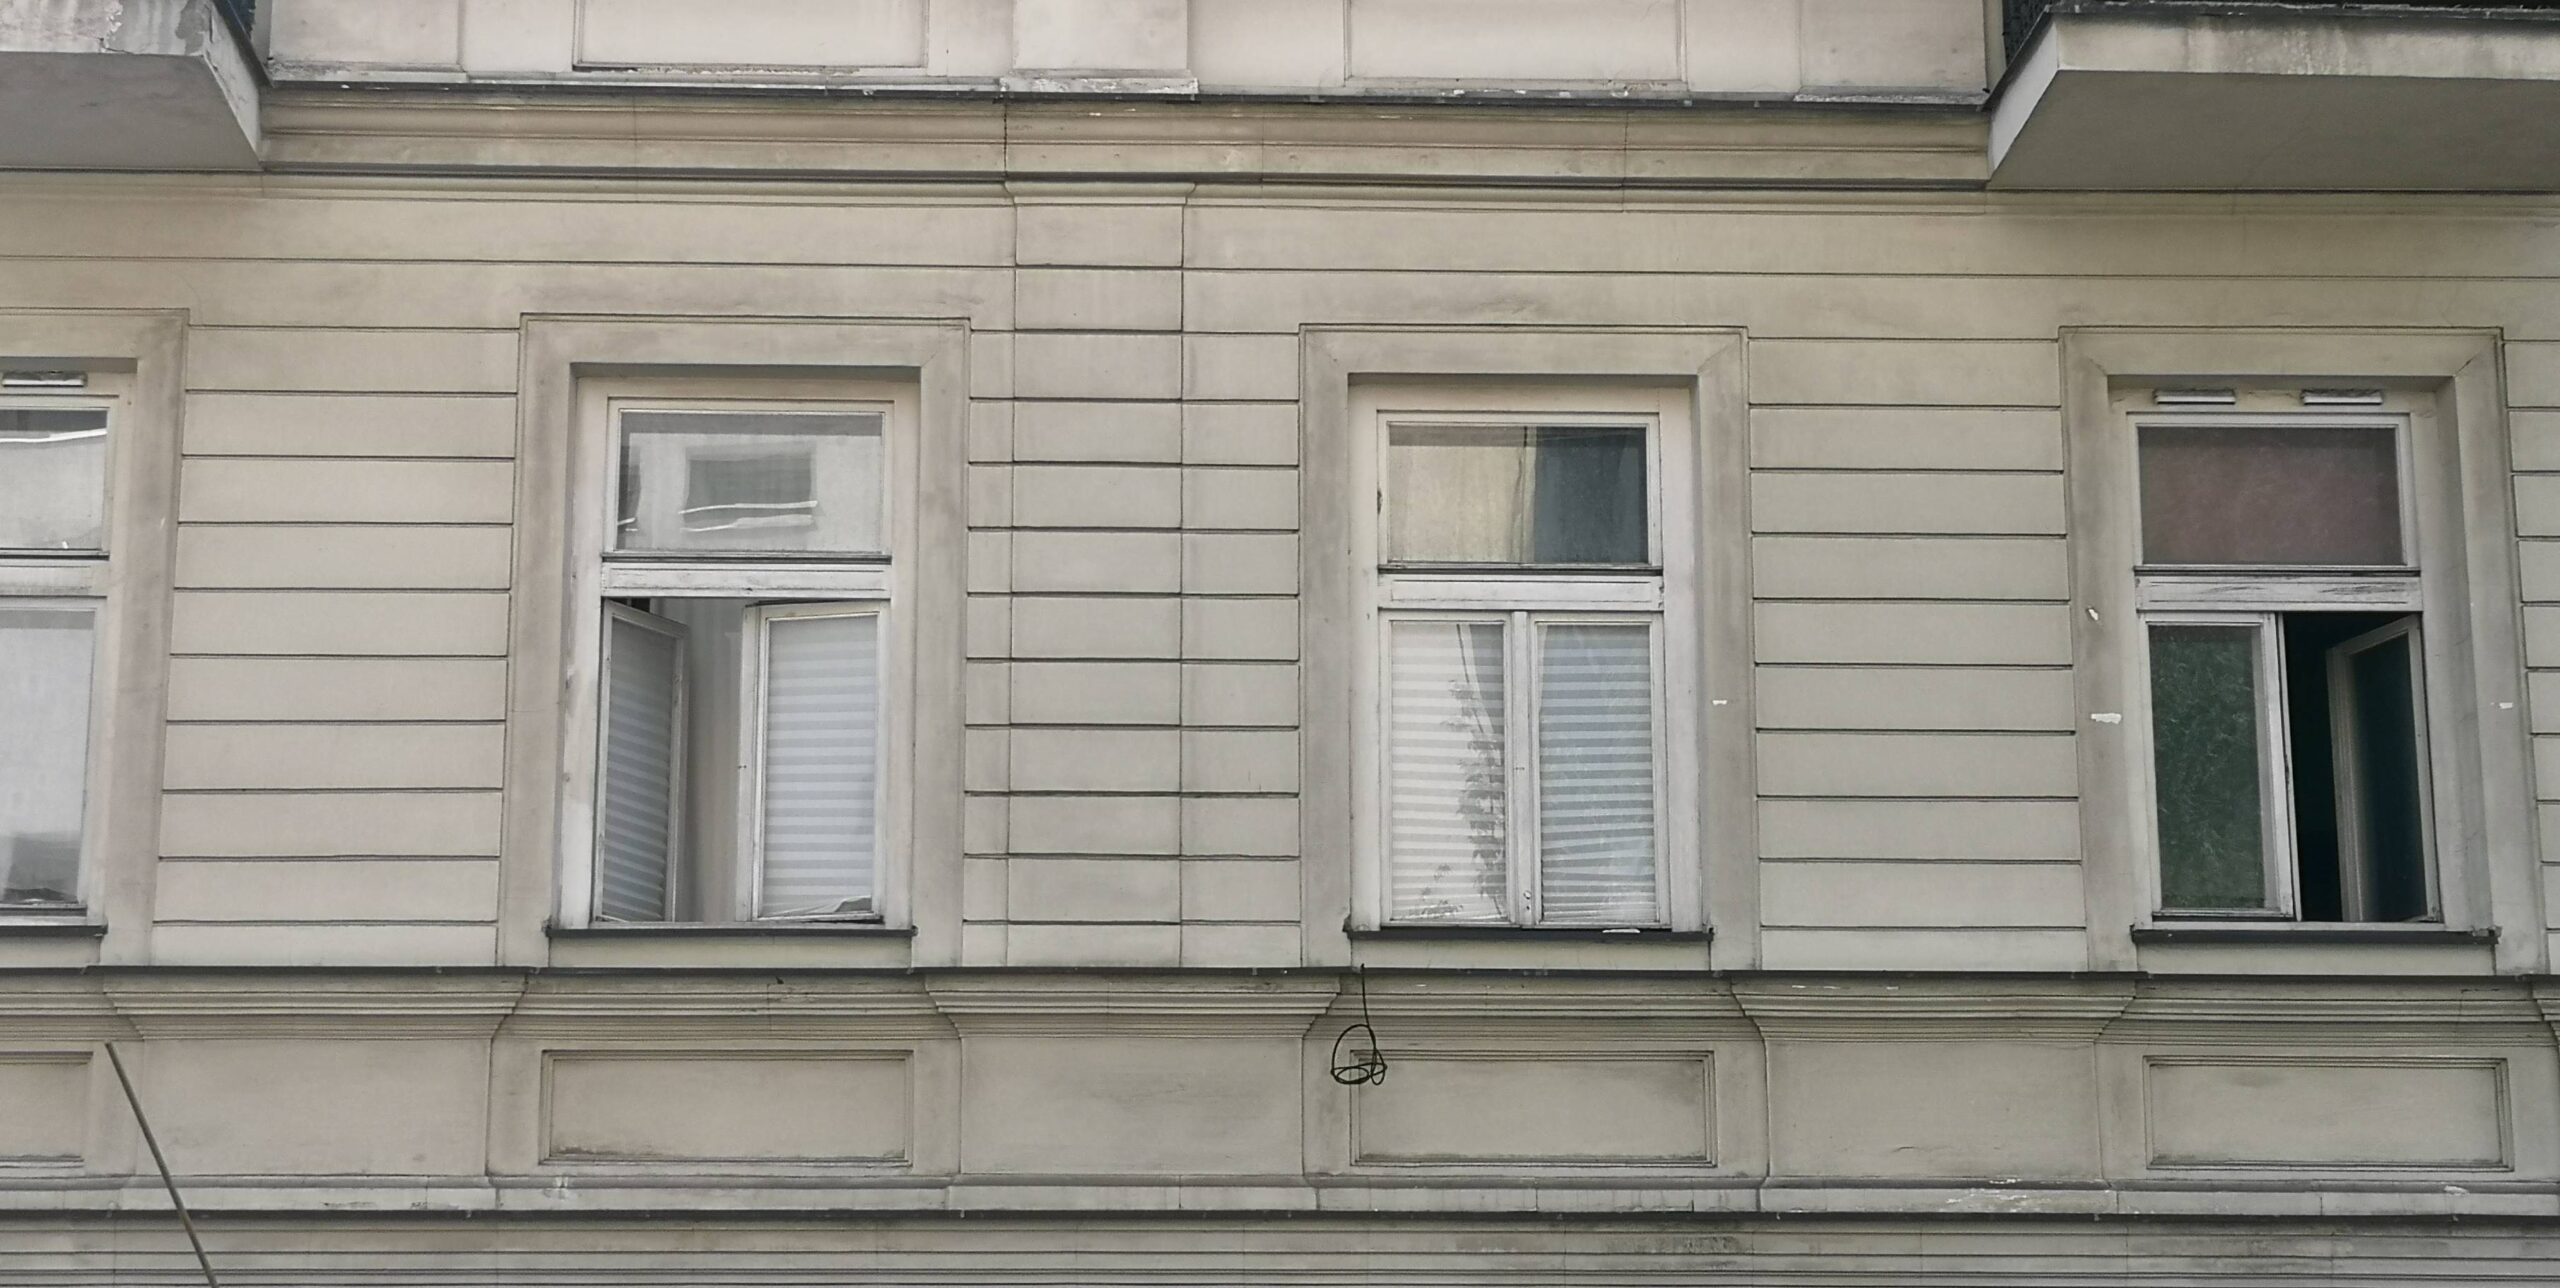 Okna I-go piętra. Fot. Danuta Chodowiec 2022 r., źródło: AOD III.